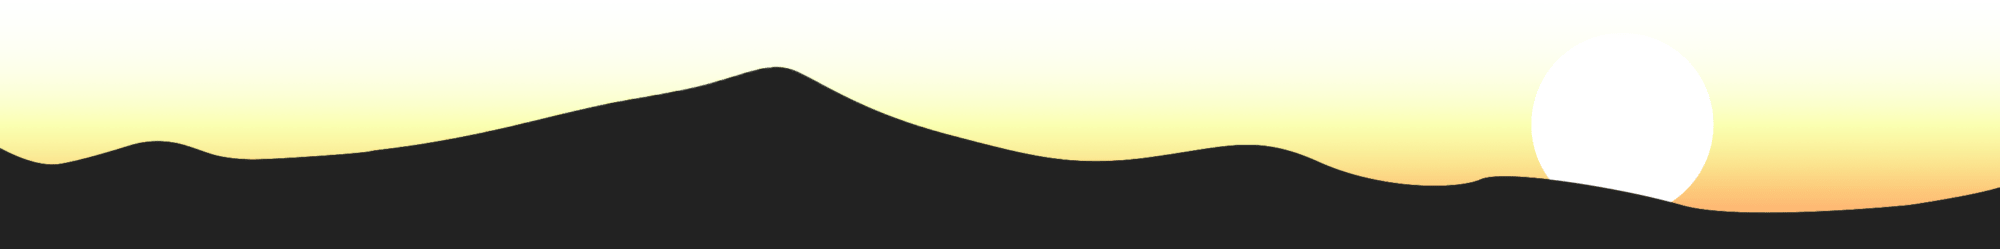 Shamanism mountains sunset